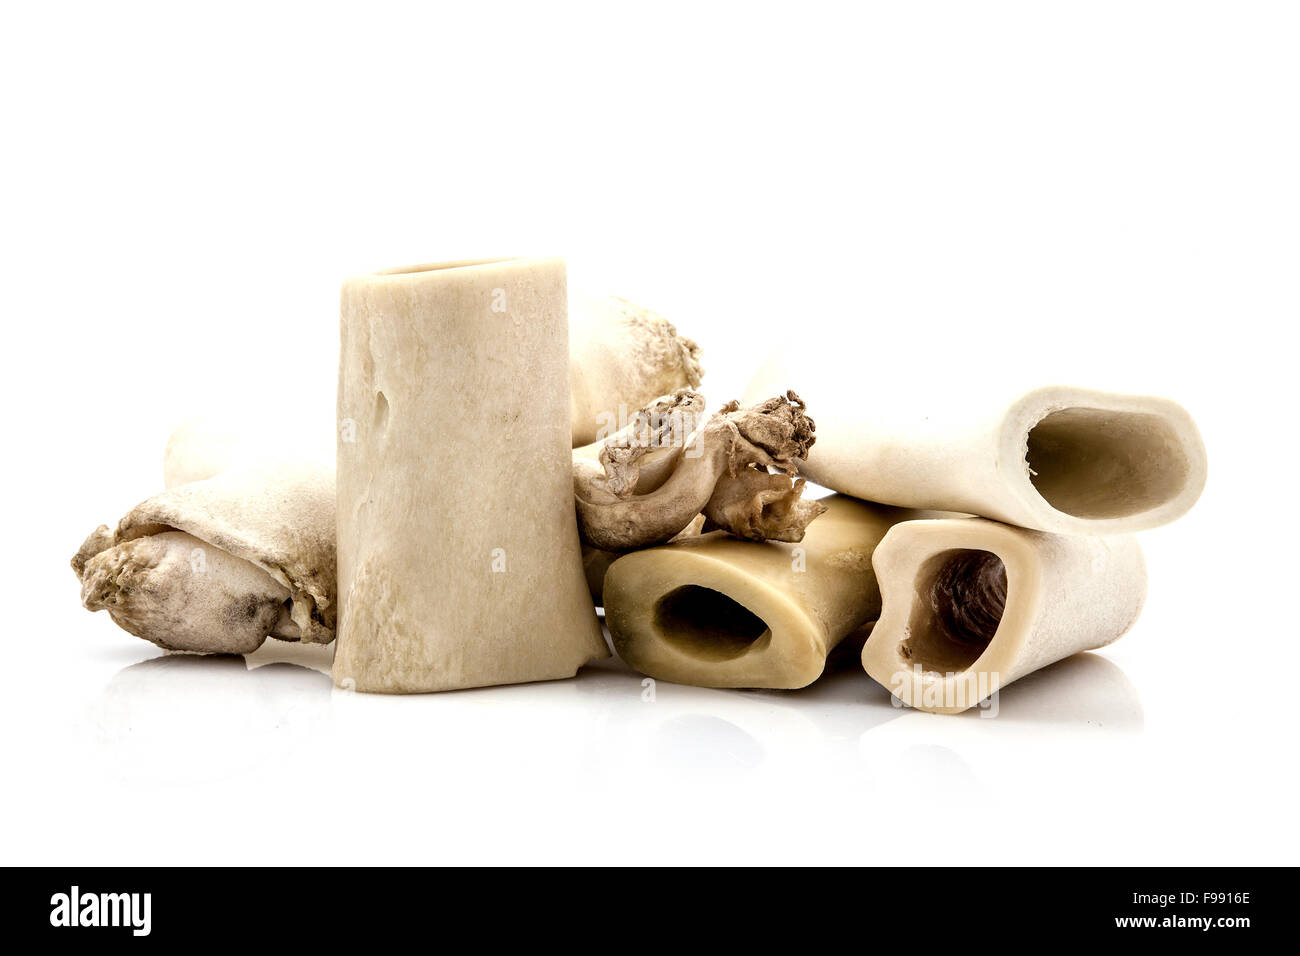 Pile of dog bones isolated on white Stock Photo